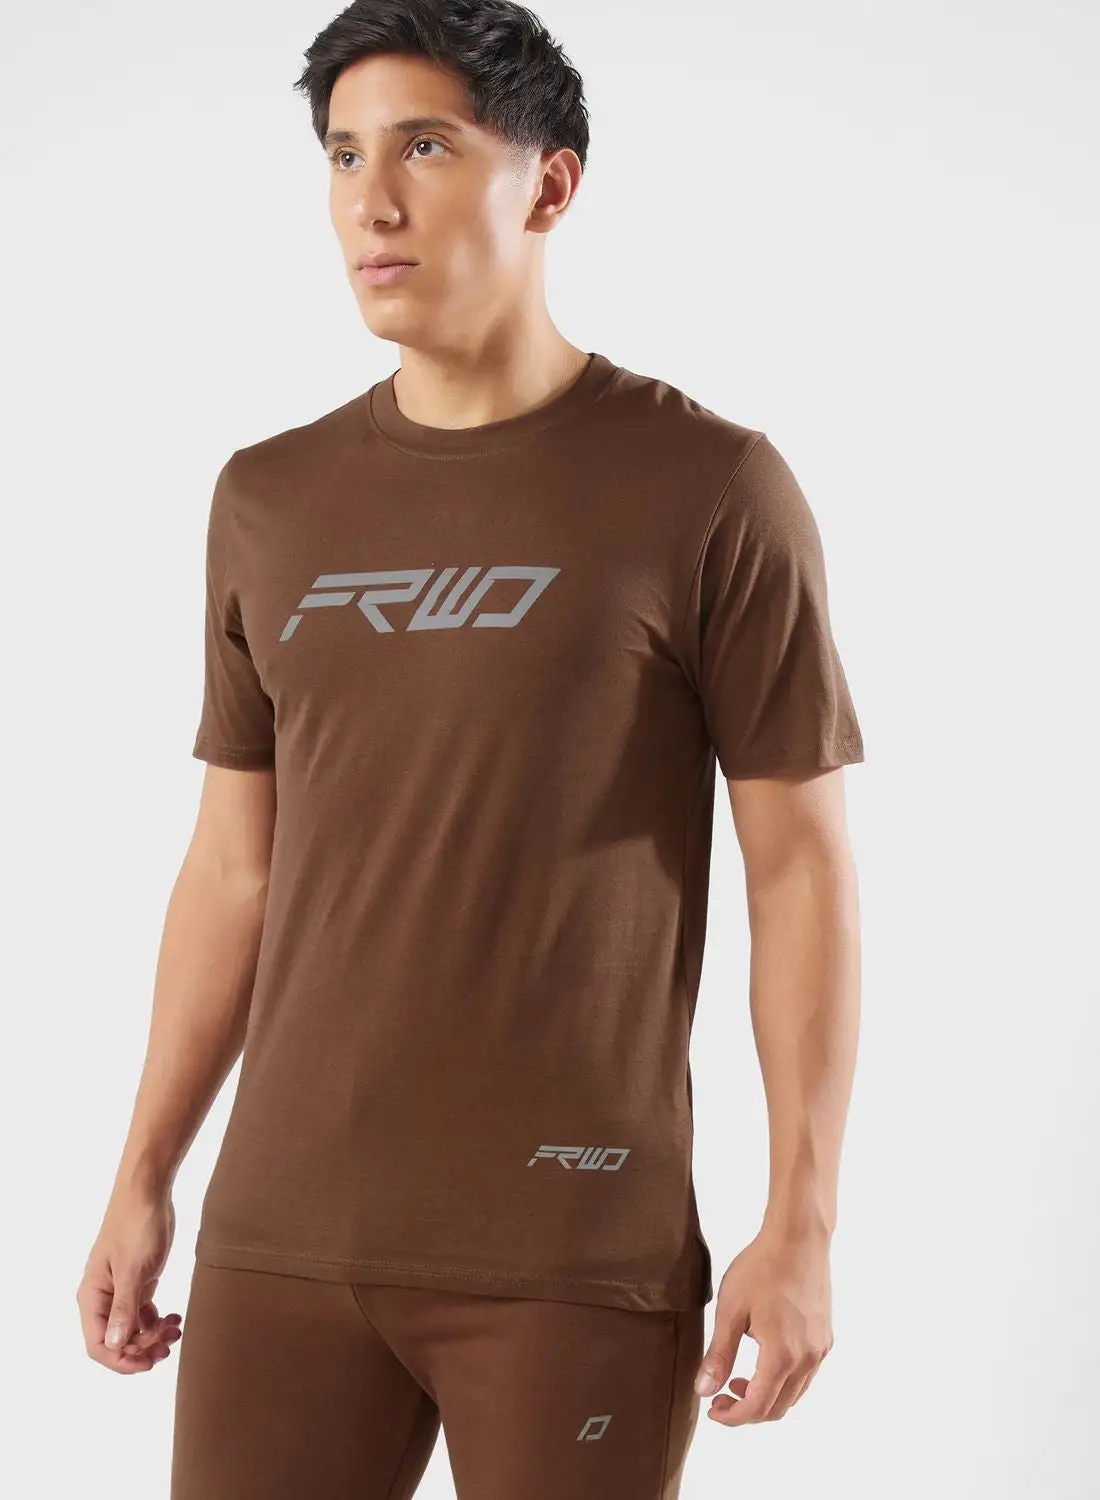 FRWD FRWD Logo T-Shirt